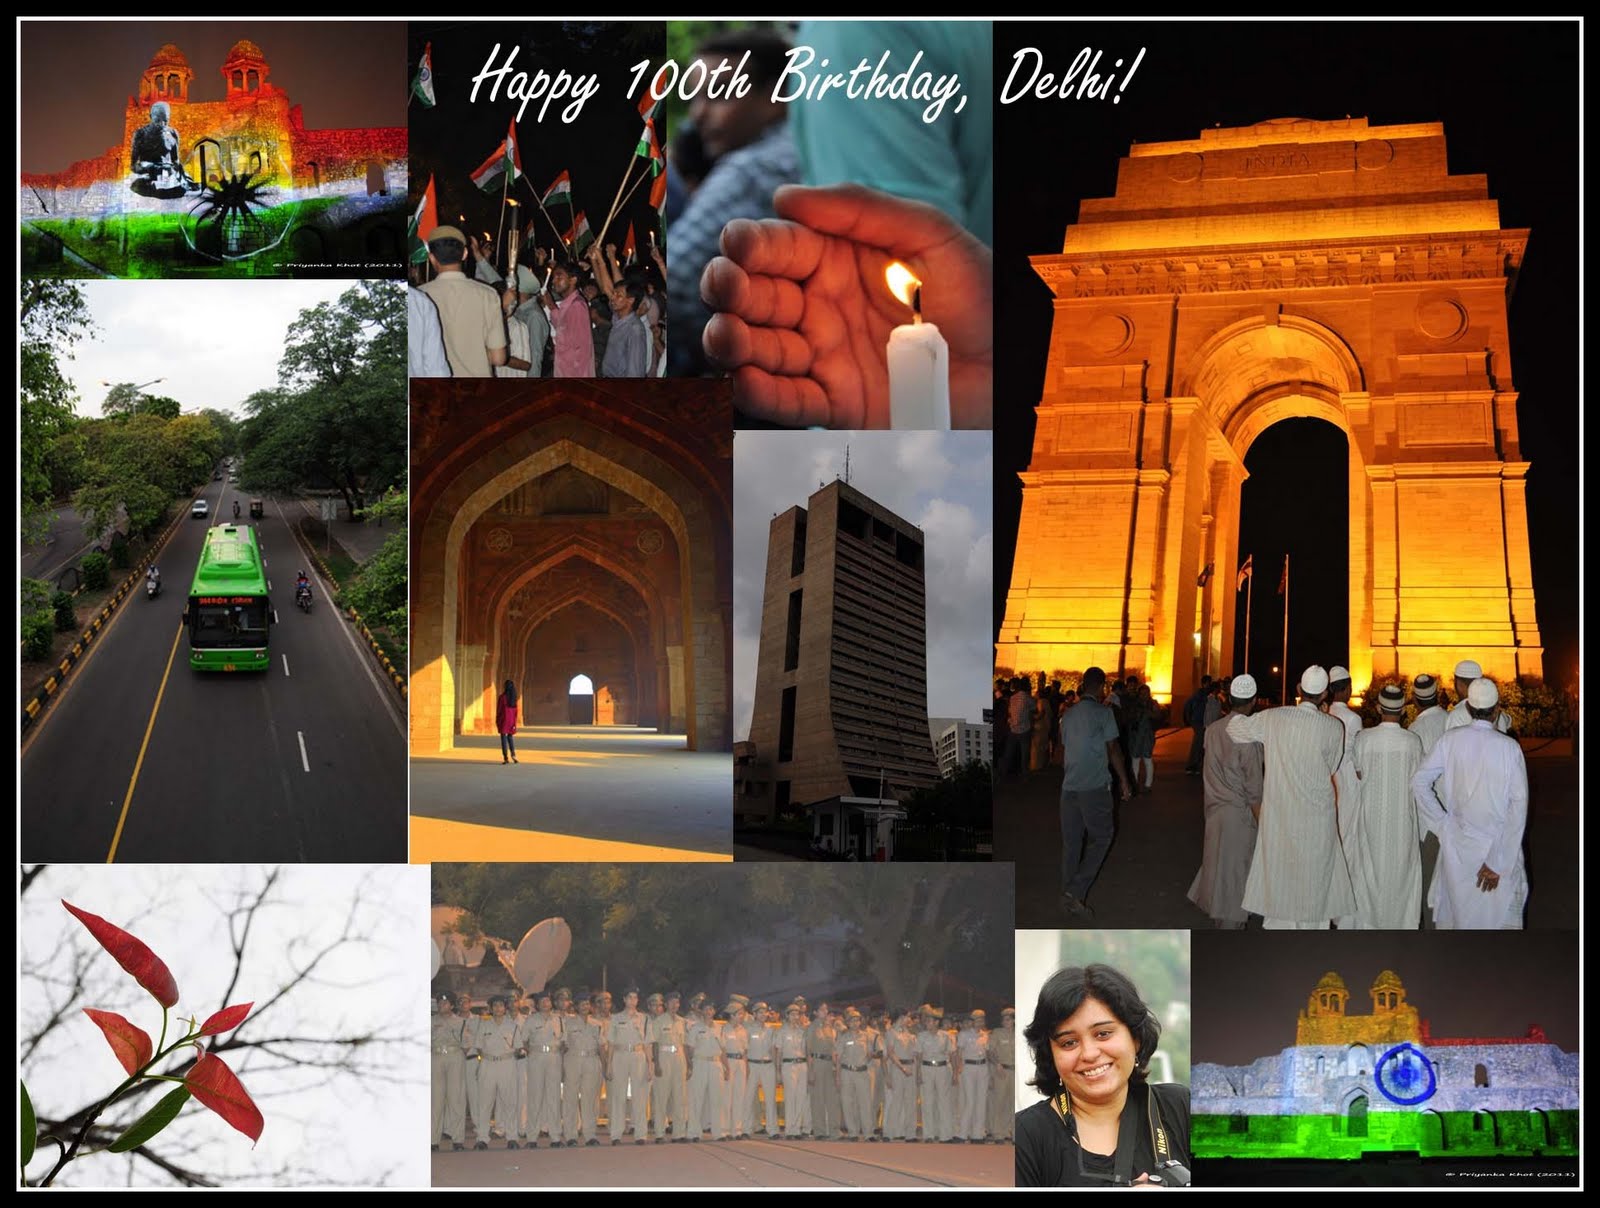 Delhi Photo Diary: Happy 100th Birthday, Delhi!